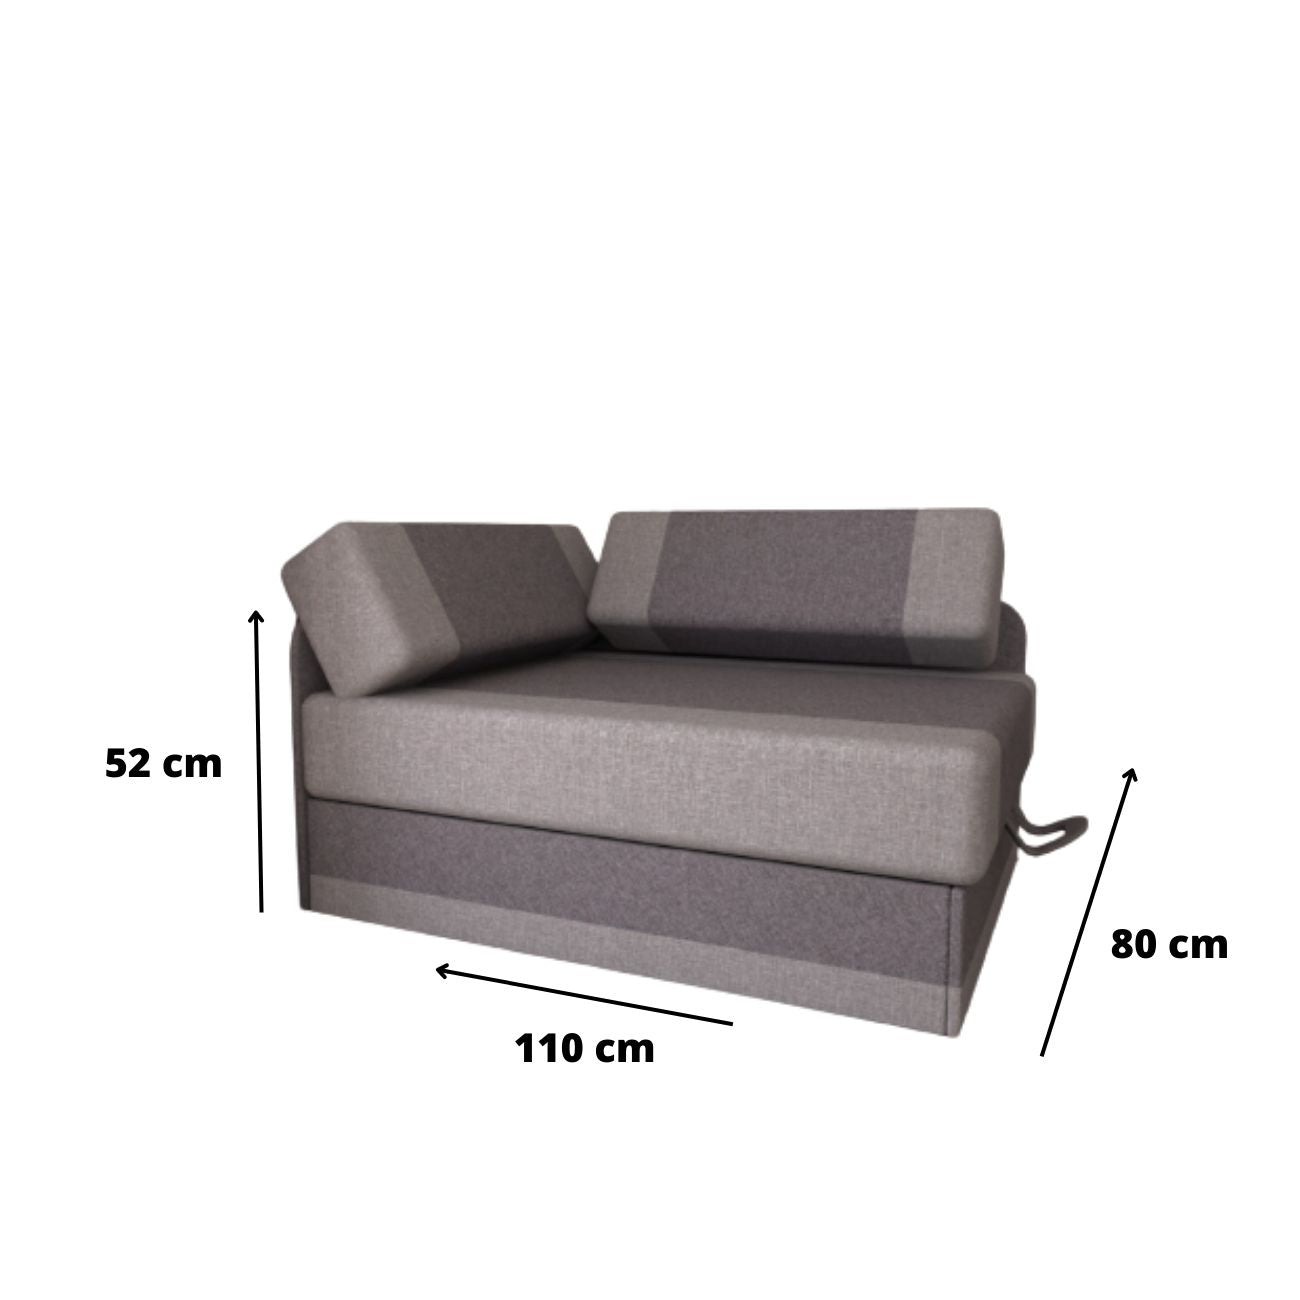 Wymiary przed rozłożeniem fotela tapczanu sofy rozkładanej regulowana długość MIKI są tak dostosowane aby mebel nie zajmował dużo miejsca.